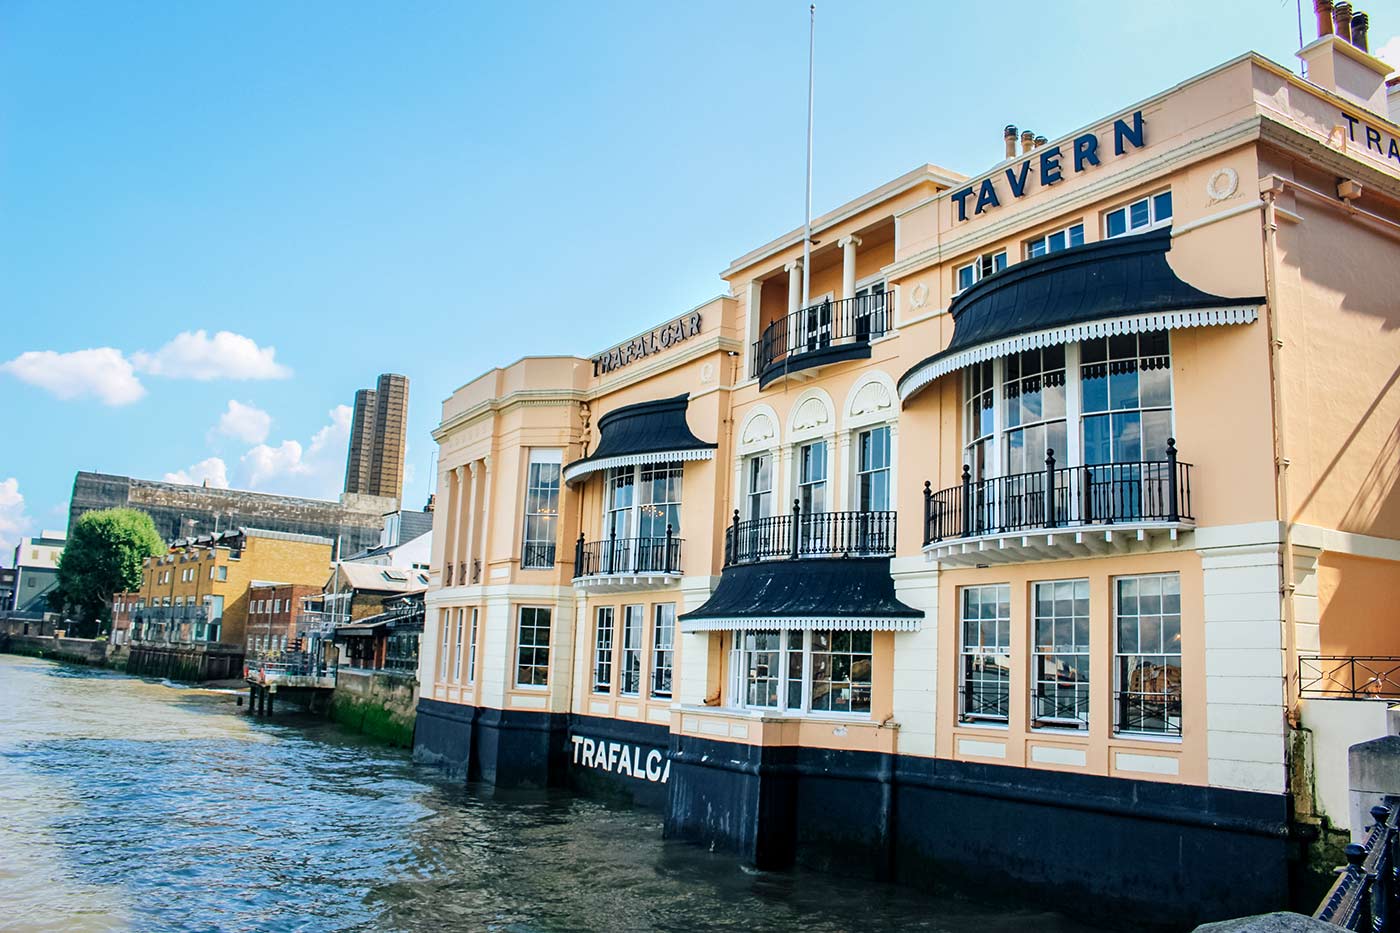 The Trafalgar Tavern pub Greenwich Copyright CK Travels